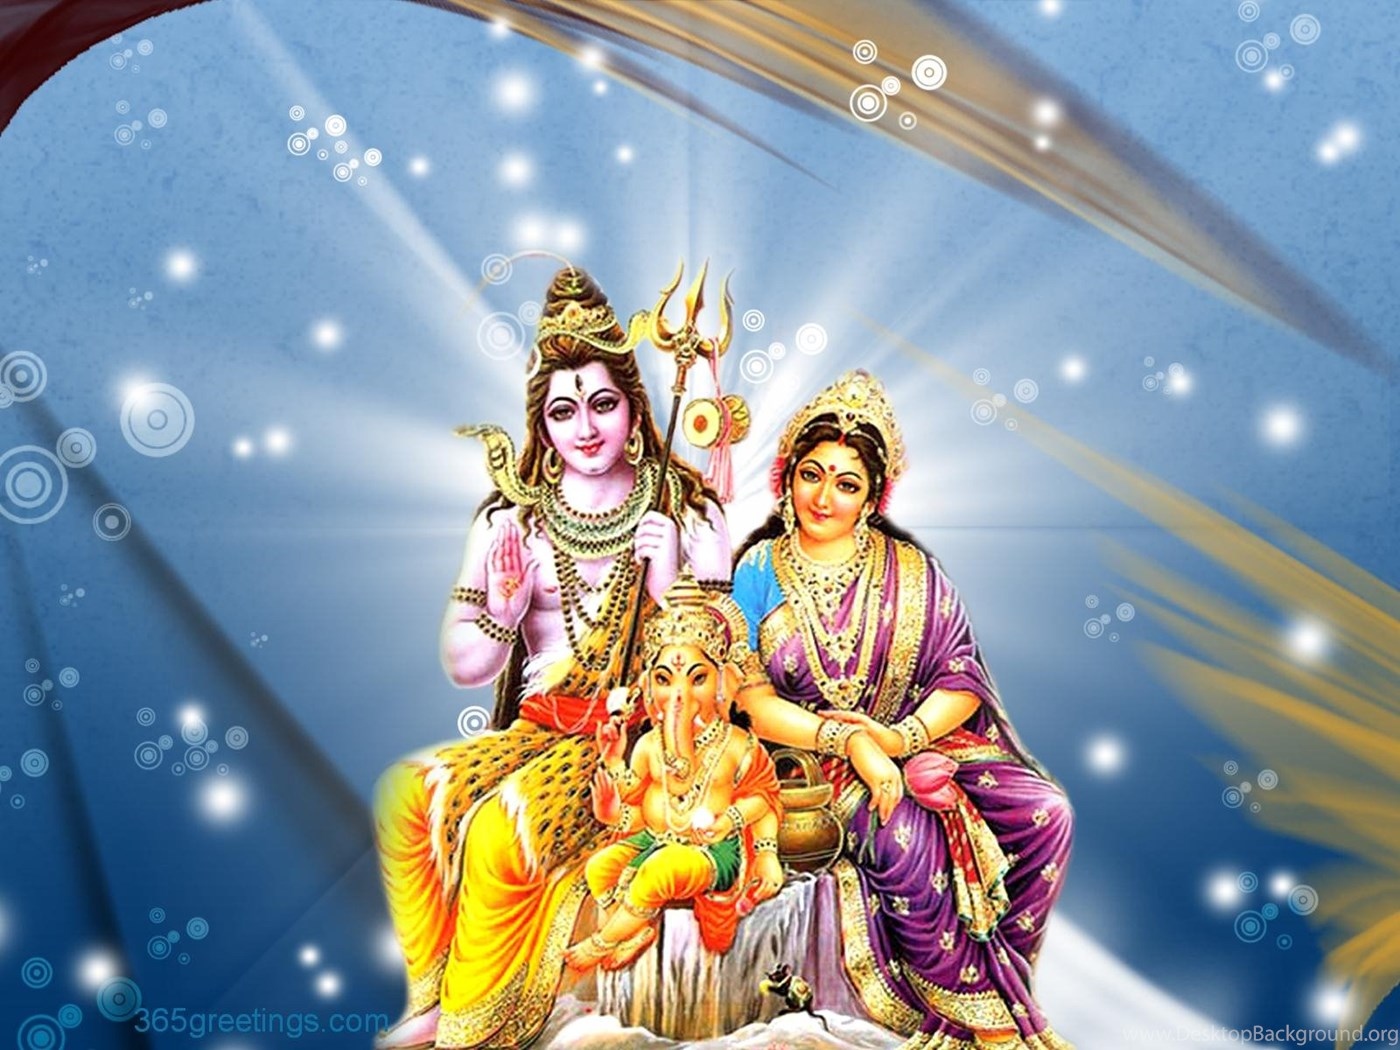 Sivan Parvathi - Lord Ganesh